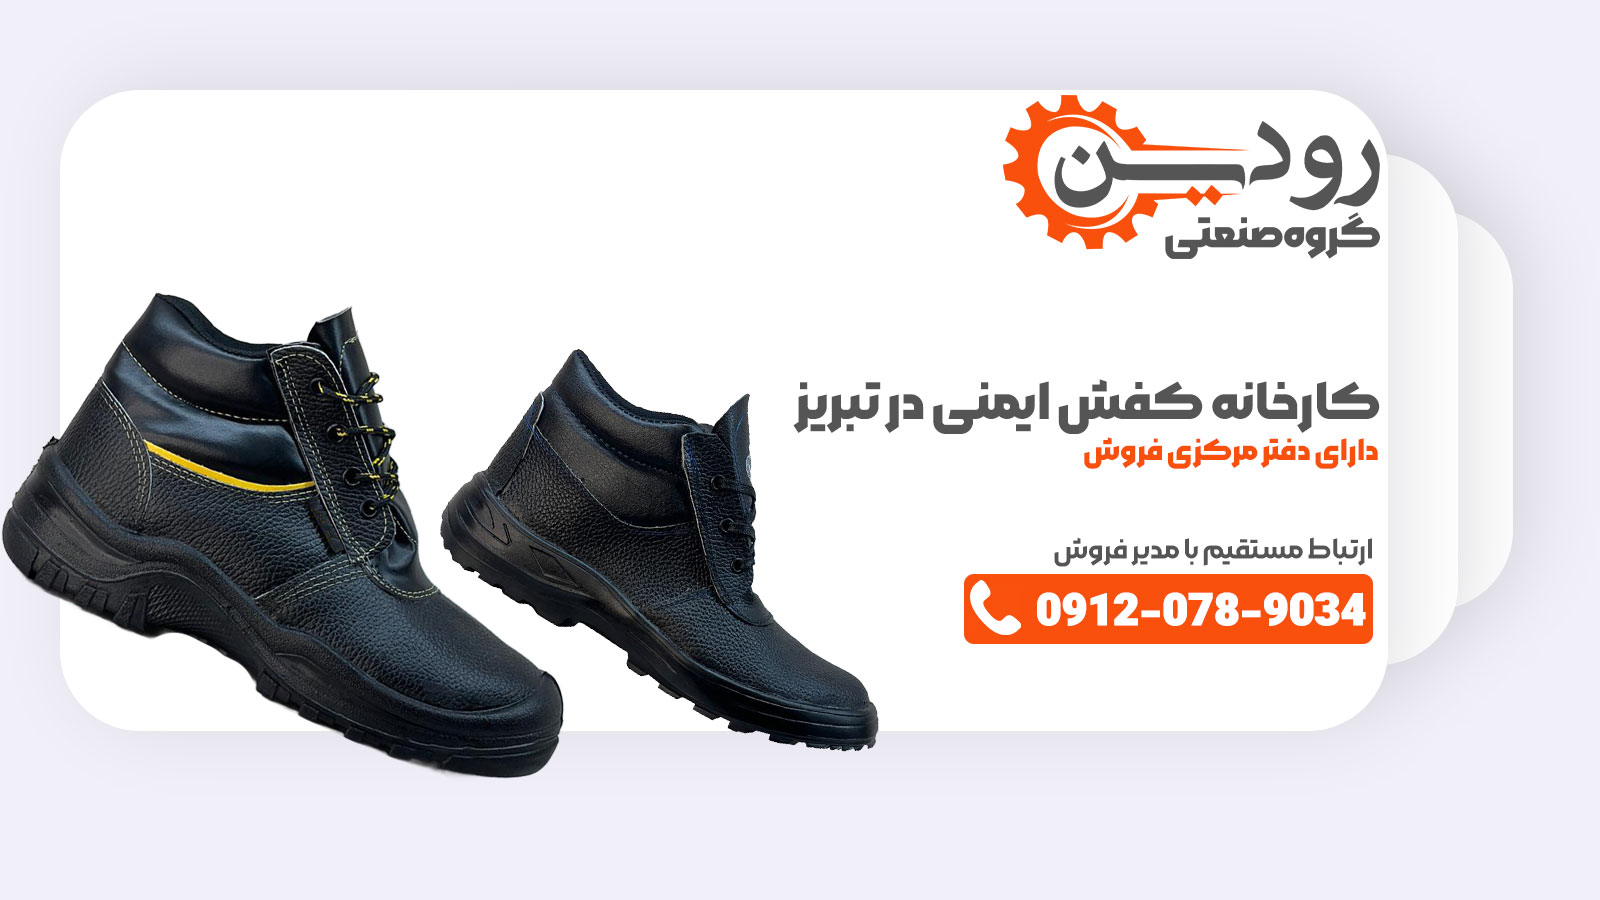 کارخانه تولید کفش ایمنی در تبریز در تولید کفش ایمنی از چرم طبیعی استفاده می کند تا قیمت مناسب تری داشته باشد.